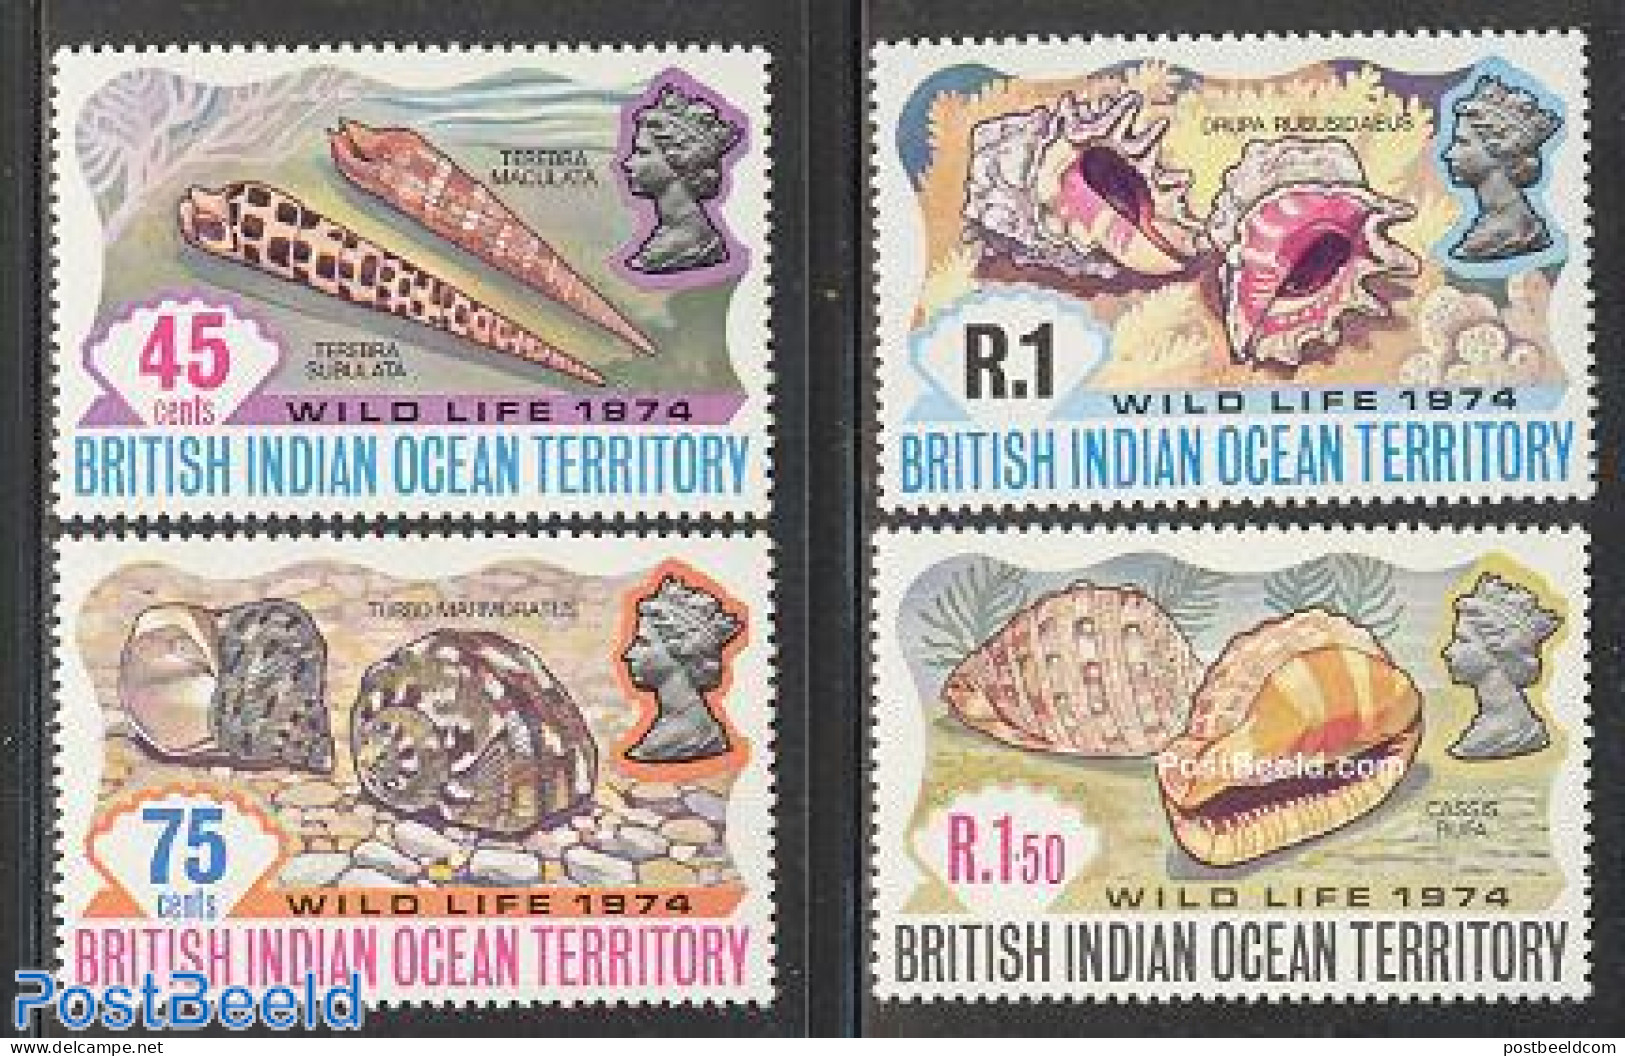 British Indian Ocean 1974 Shells 4v, Mint NH, Nature - Shells & Crustaceans - Mundo Aquatico